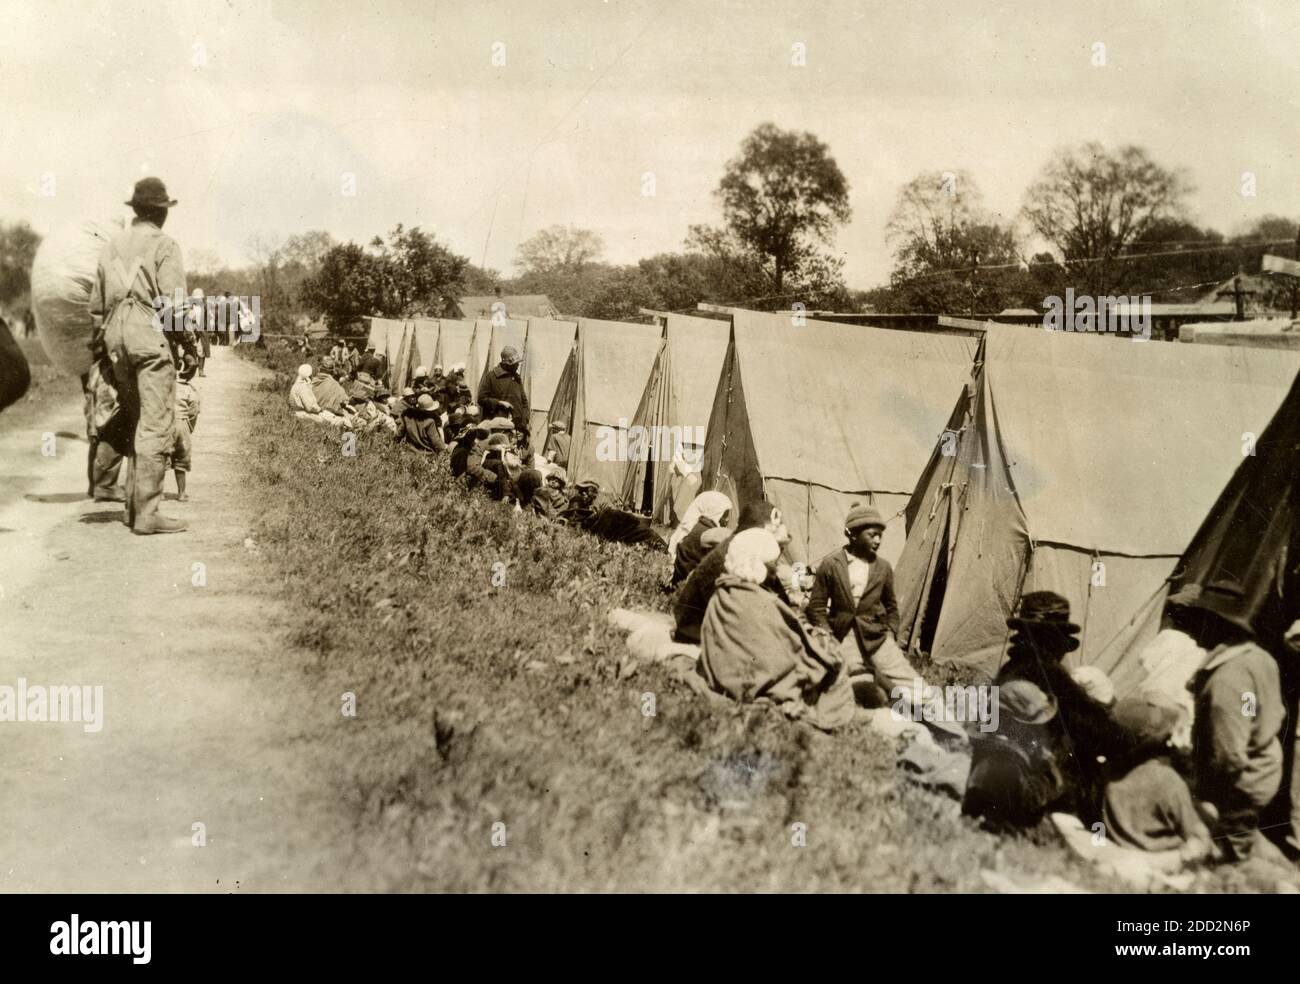 Mississippi Relief Arbeit Twilight Time, im Deich bei Greenville, Mississippi, wo der einzige verfügbare Schutz ein Zelt ist, das vom Roten Kreuz versorgt wird. Das Foto zeigt Afroamerikaner in einem Zeltlager als Folge der großen Mississippi-Flutflut von 1927. Stockfoto